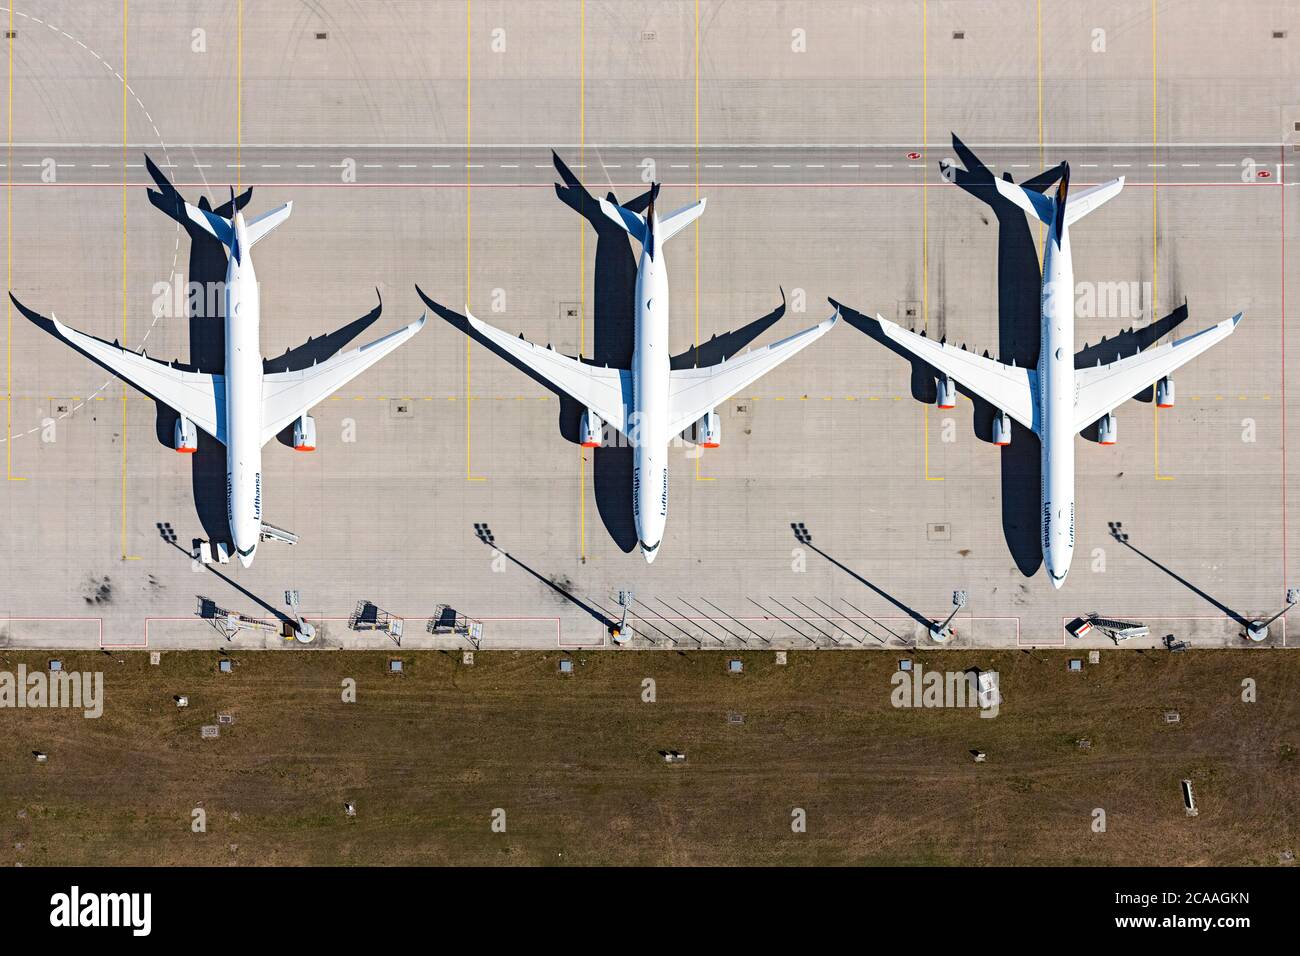 Passagierflugzeuge der Lufthansa, aufgrund des Corona Lockdowns auf der Parkposition - Abstellfläche auf dem Flughafen in München-Flughafen Stockfoto